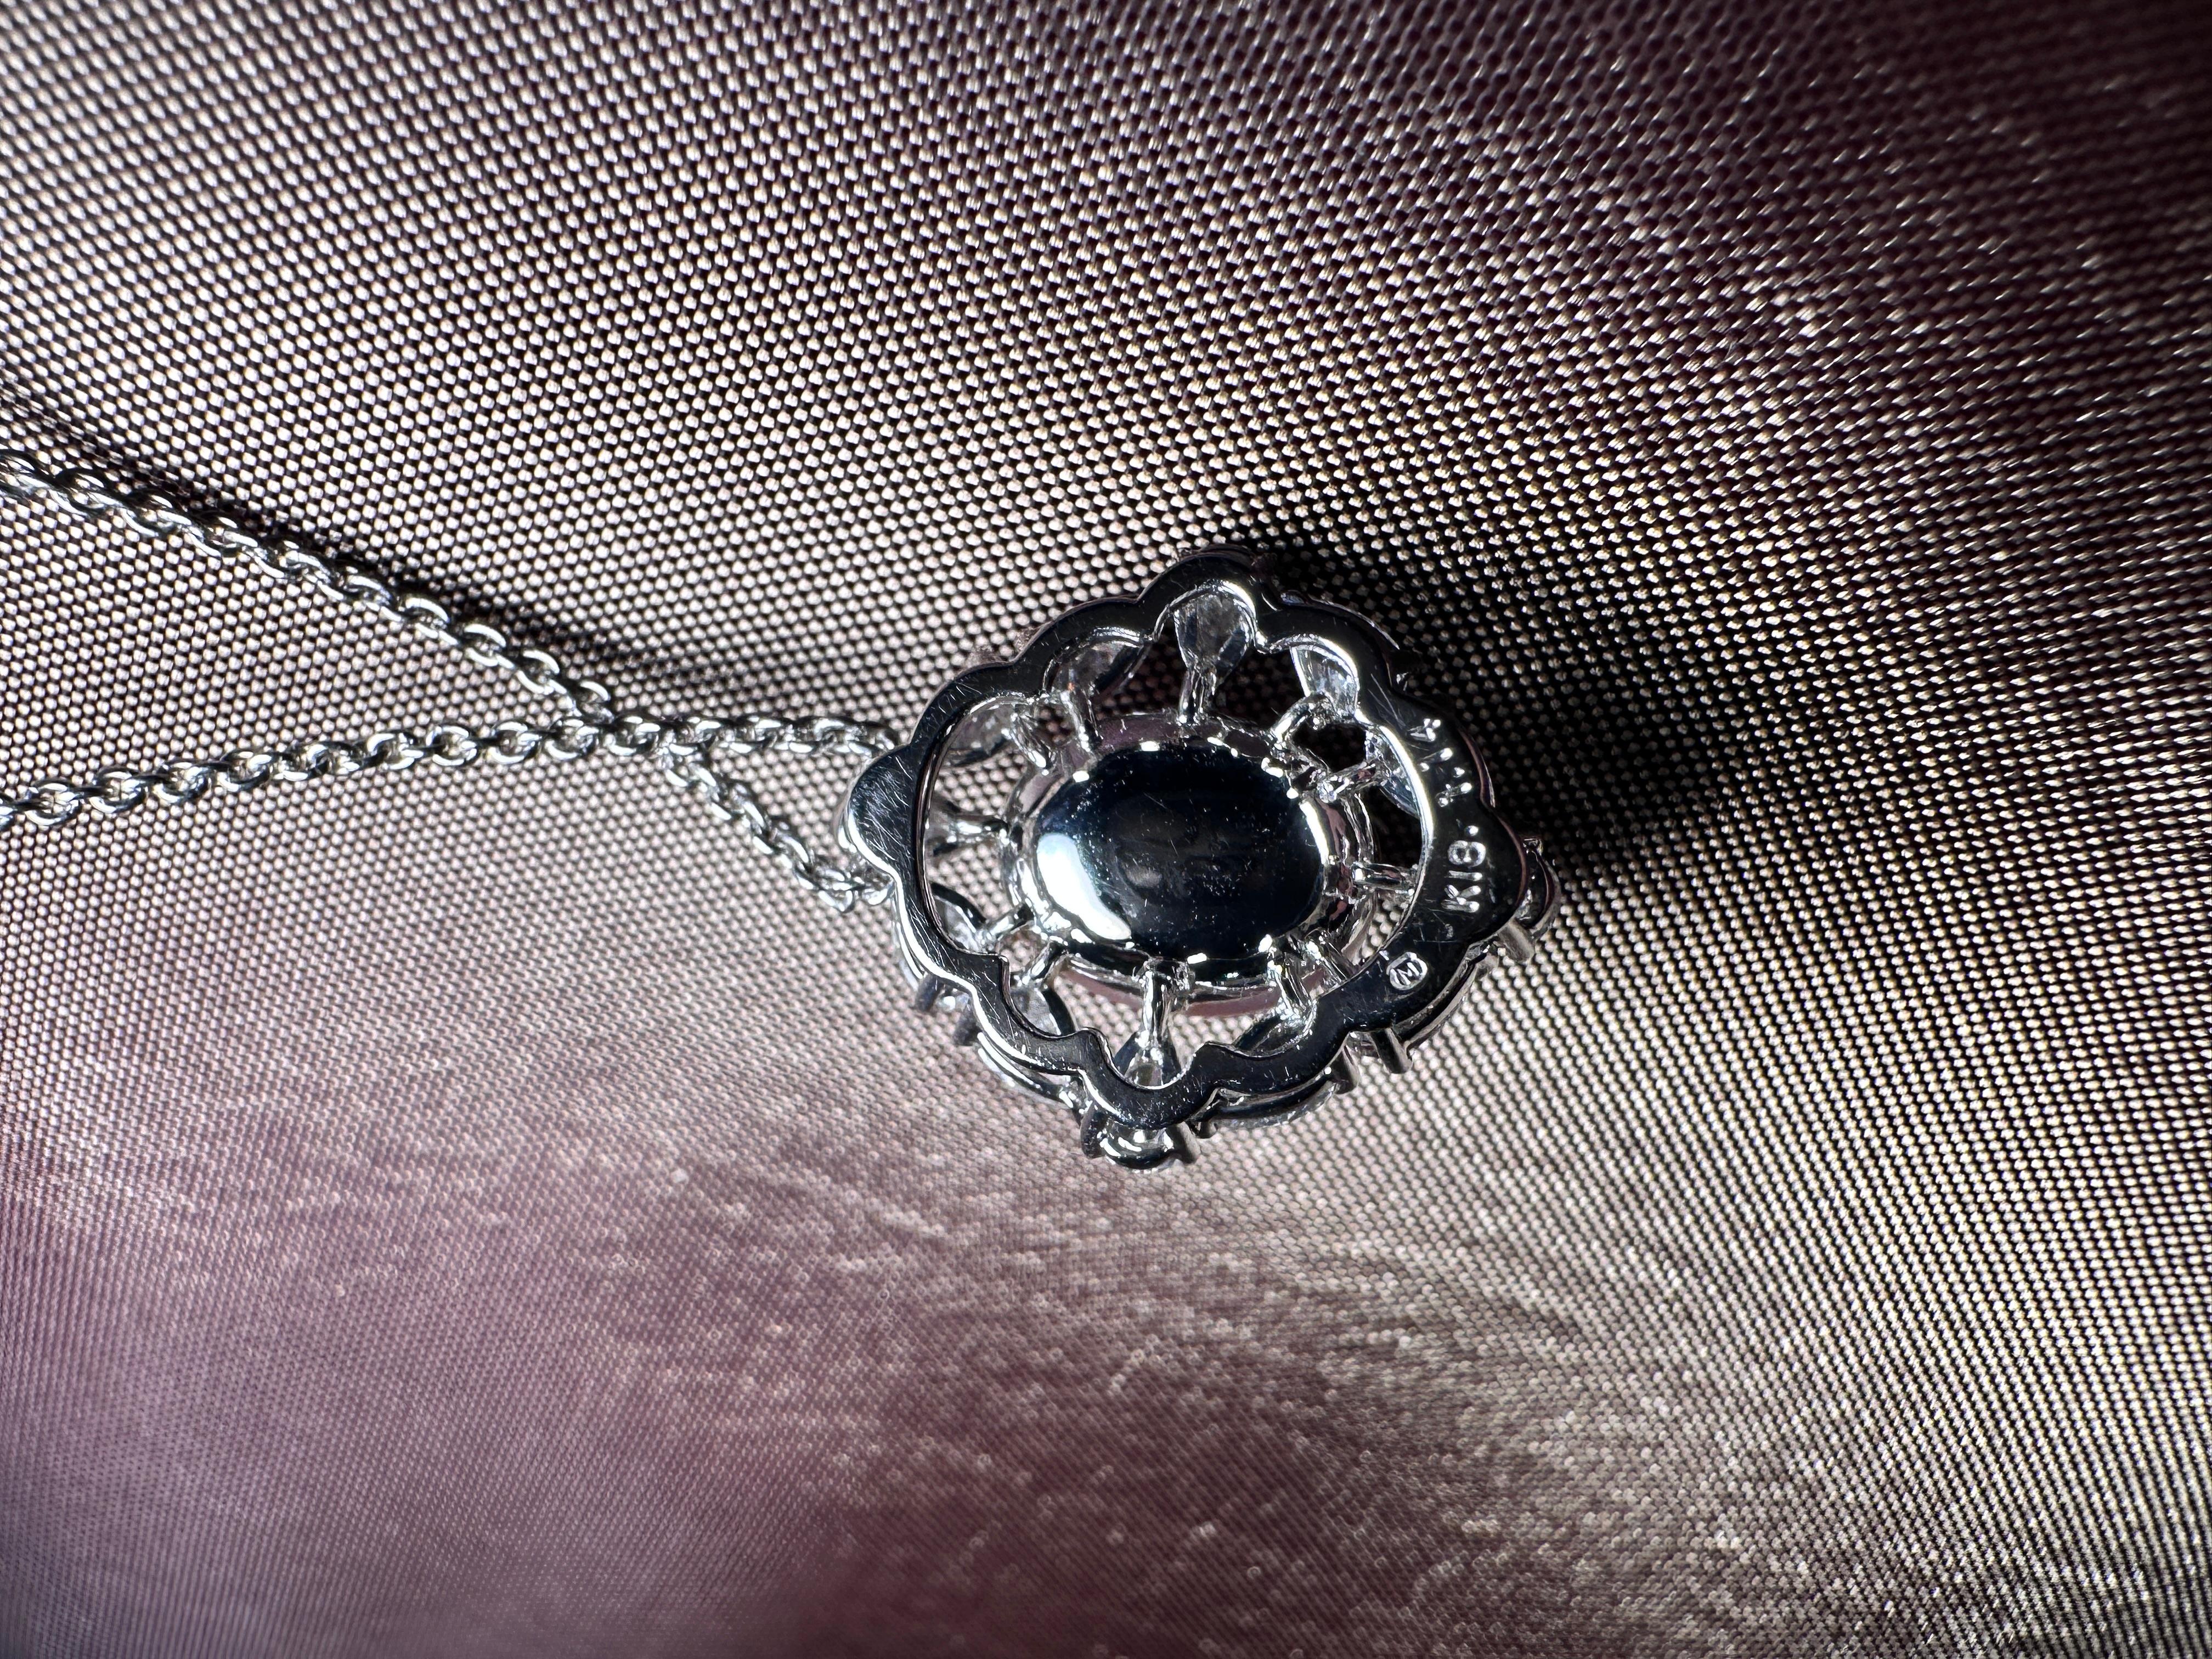 Voici le pendentif perle de conque diamant de Mikimoto, une pièce à couper le souffle réalisée en or 18 carats. Ce pendentif exquis met en valeur une perle de conque rare et lustrée, mesurant 8,17x9,94 mm, rayonnant d'élégance et d'unicité. Orné de